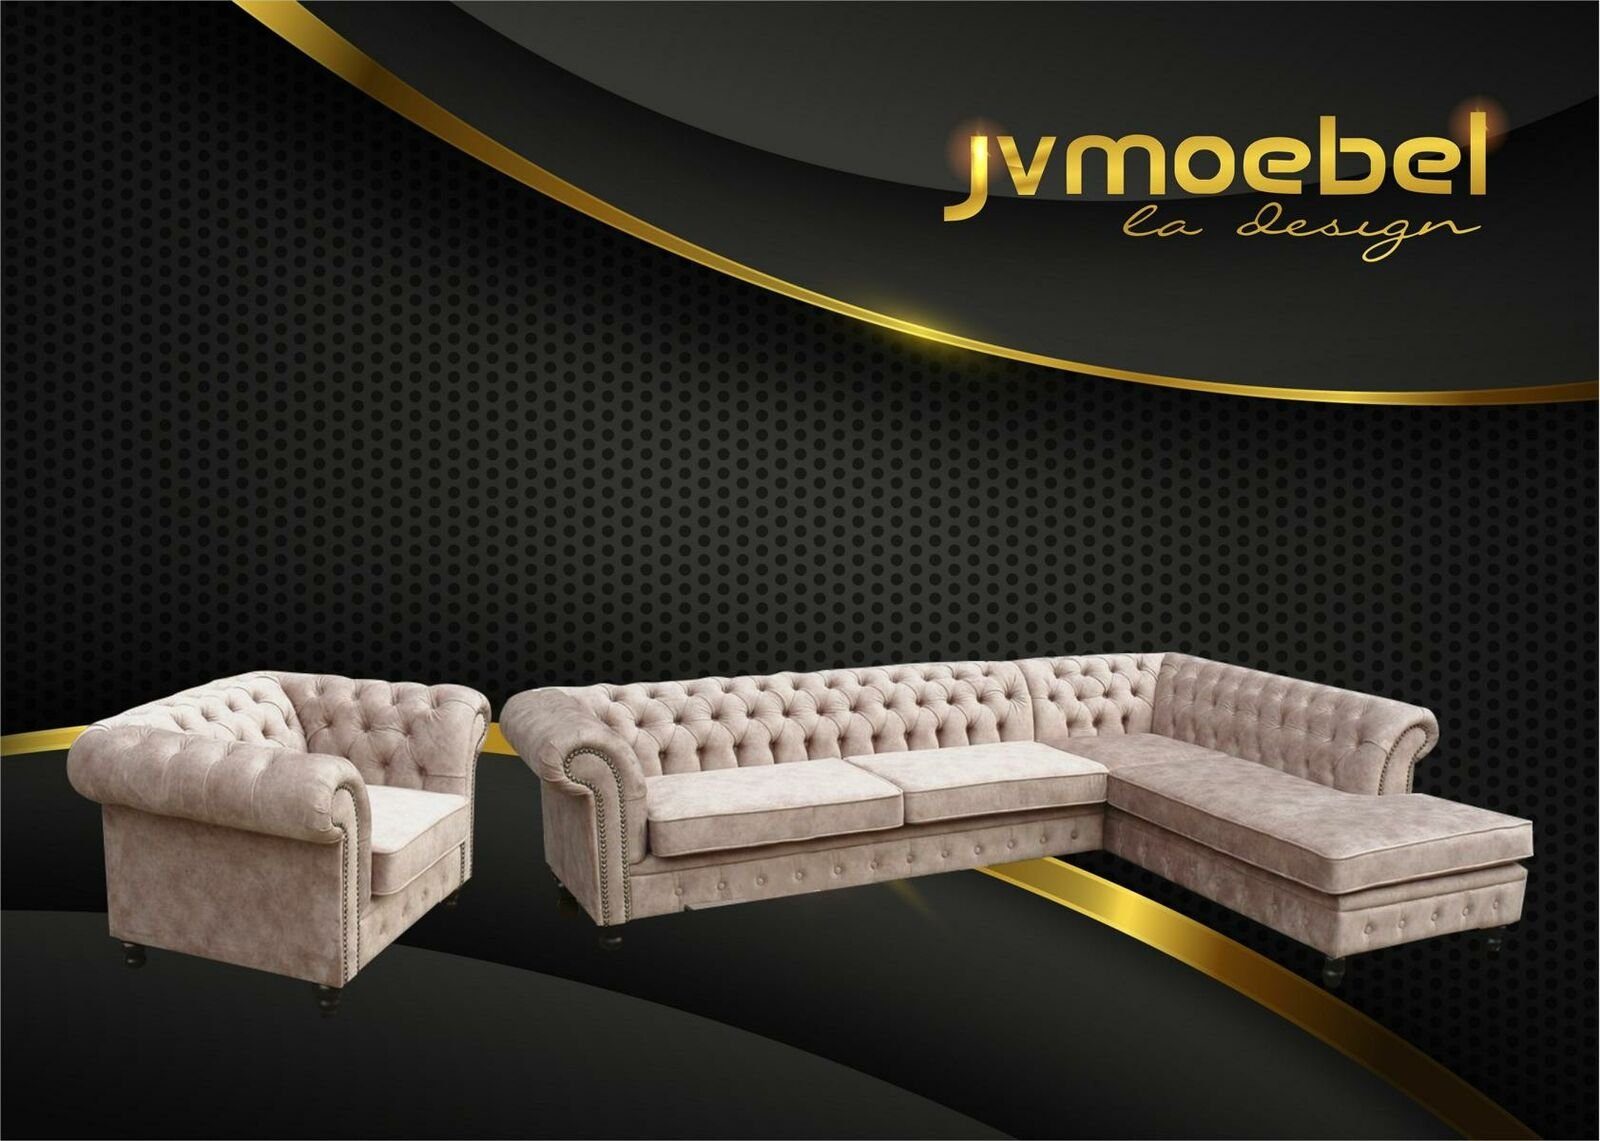 JVmoebel Ecksofa, Ecksofa Sofa Couch Polster Chesterfield Design Luxus Möbel Beige